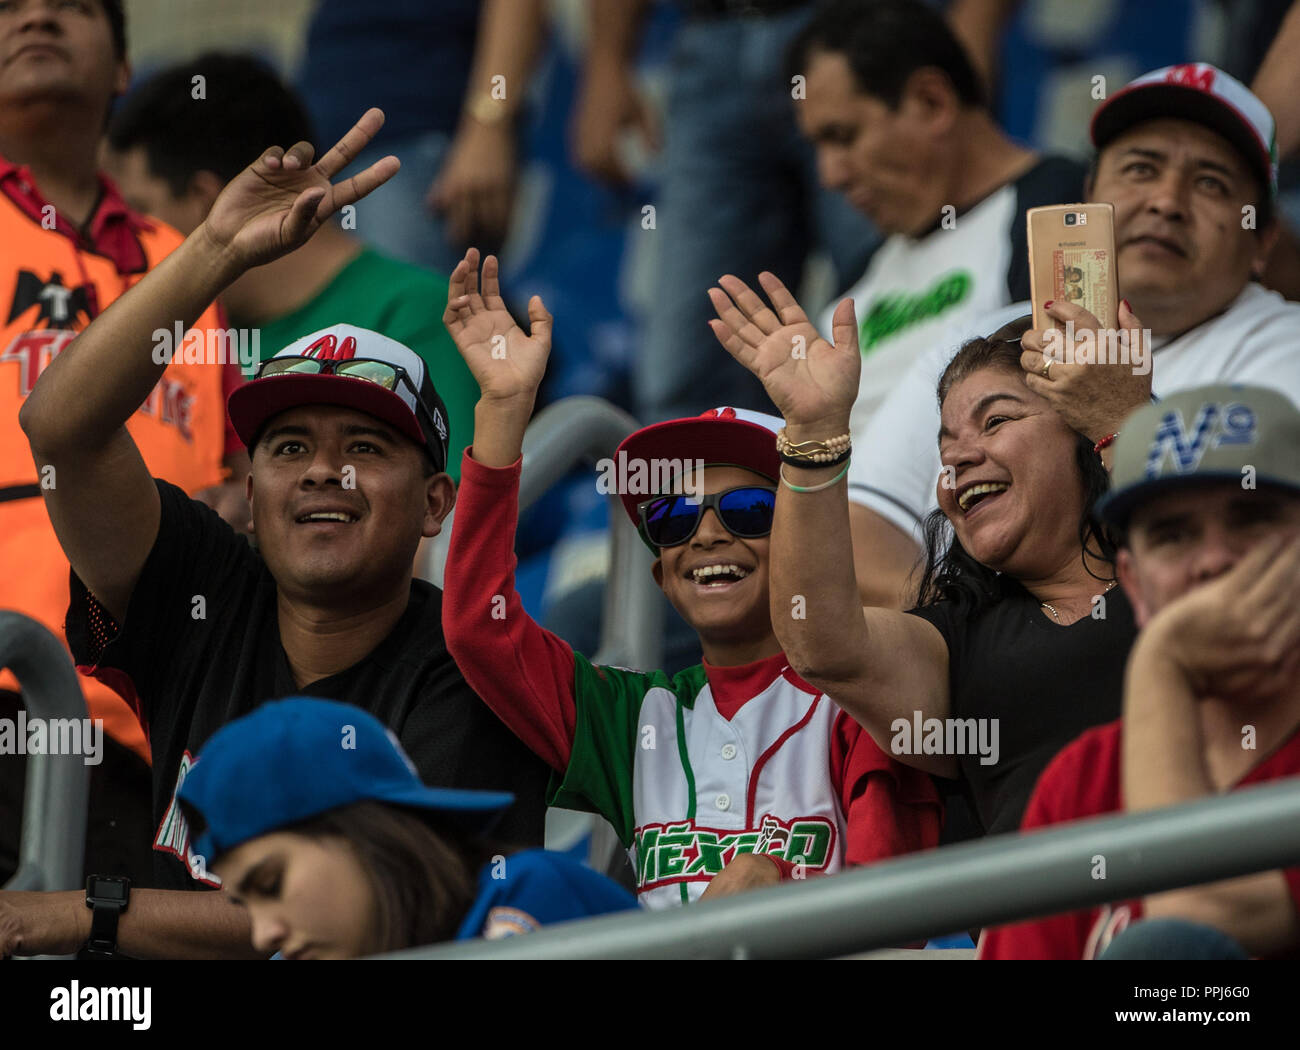 Aficionados mexicanos. Partido de beisbol de la Serie del Caribe con el Encuentro entre los Alazanes de Cuba de Gamma contra los Criollos de Caguas de Banque D'Images